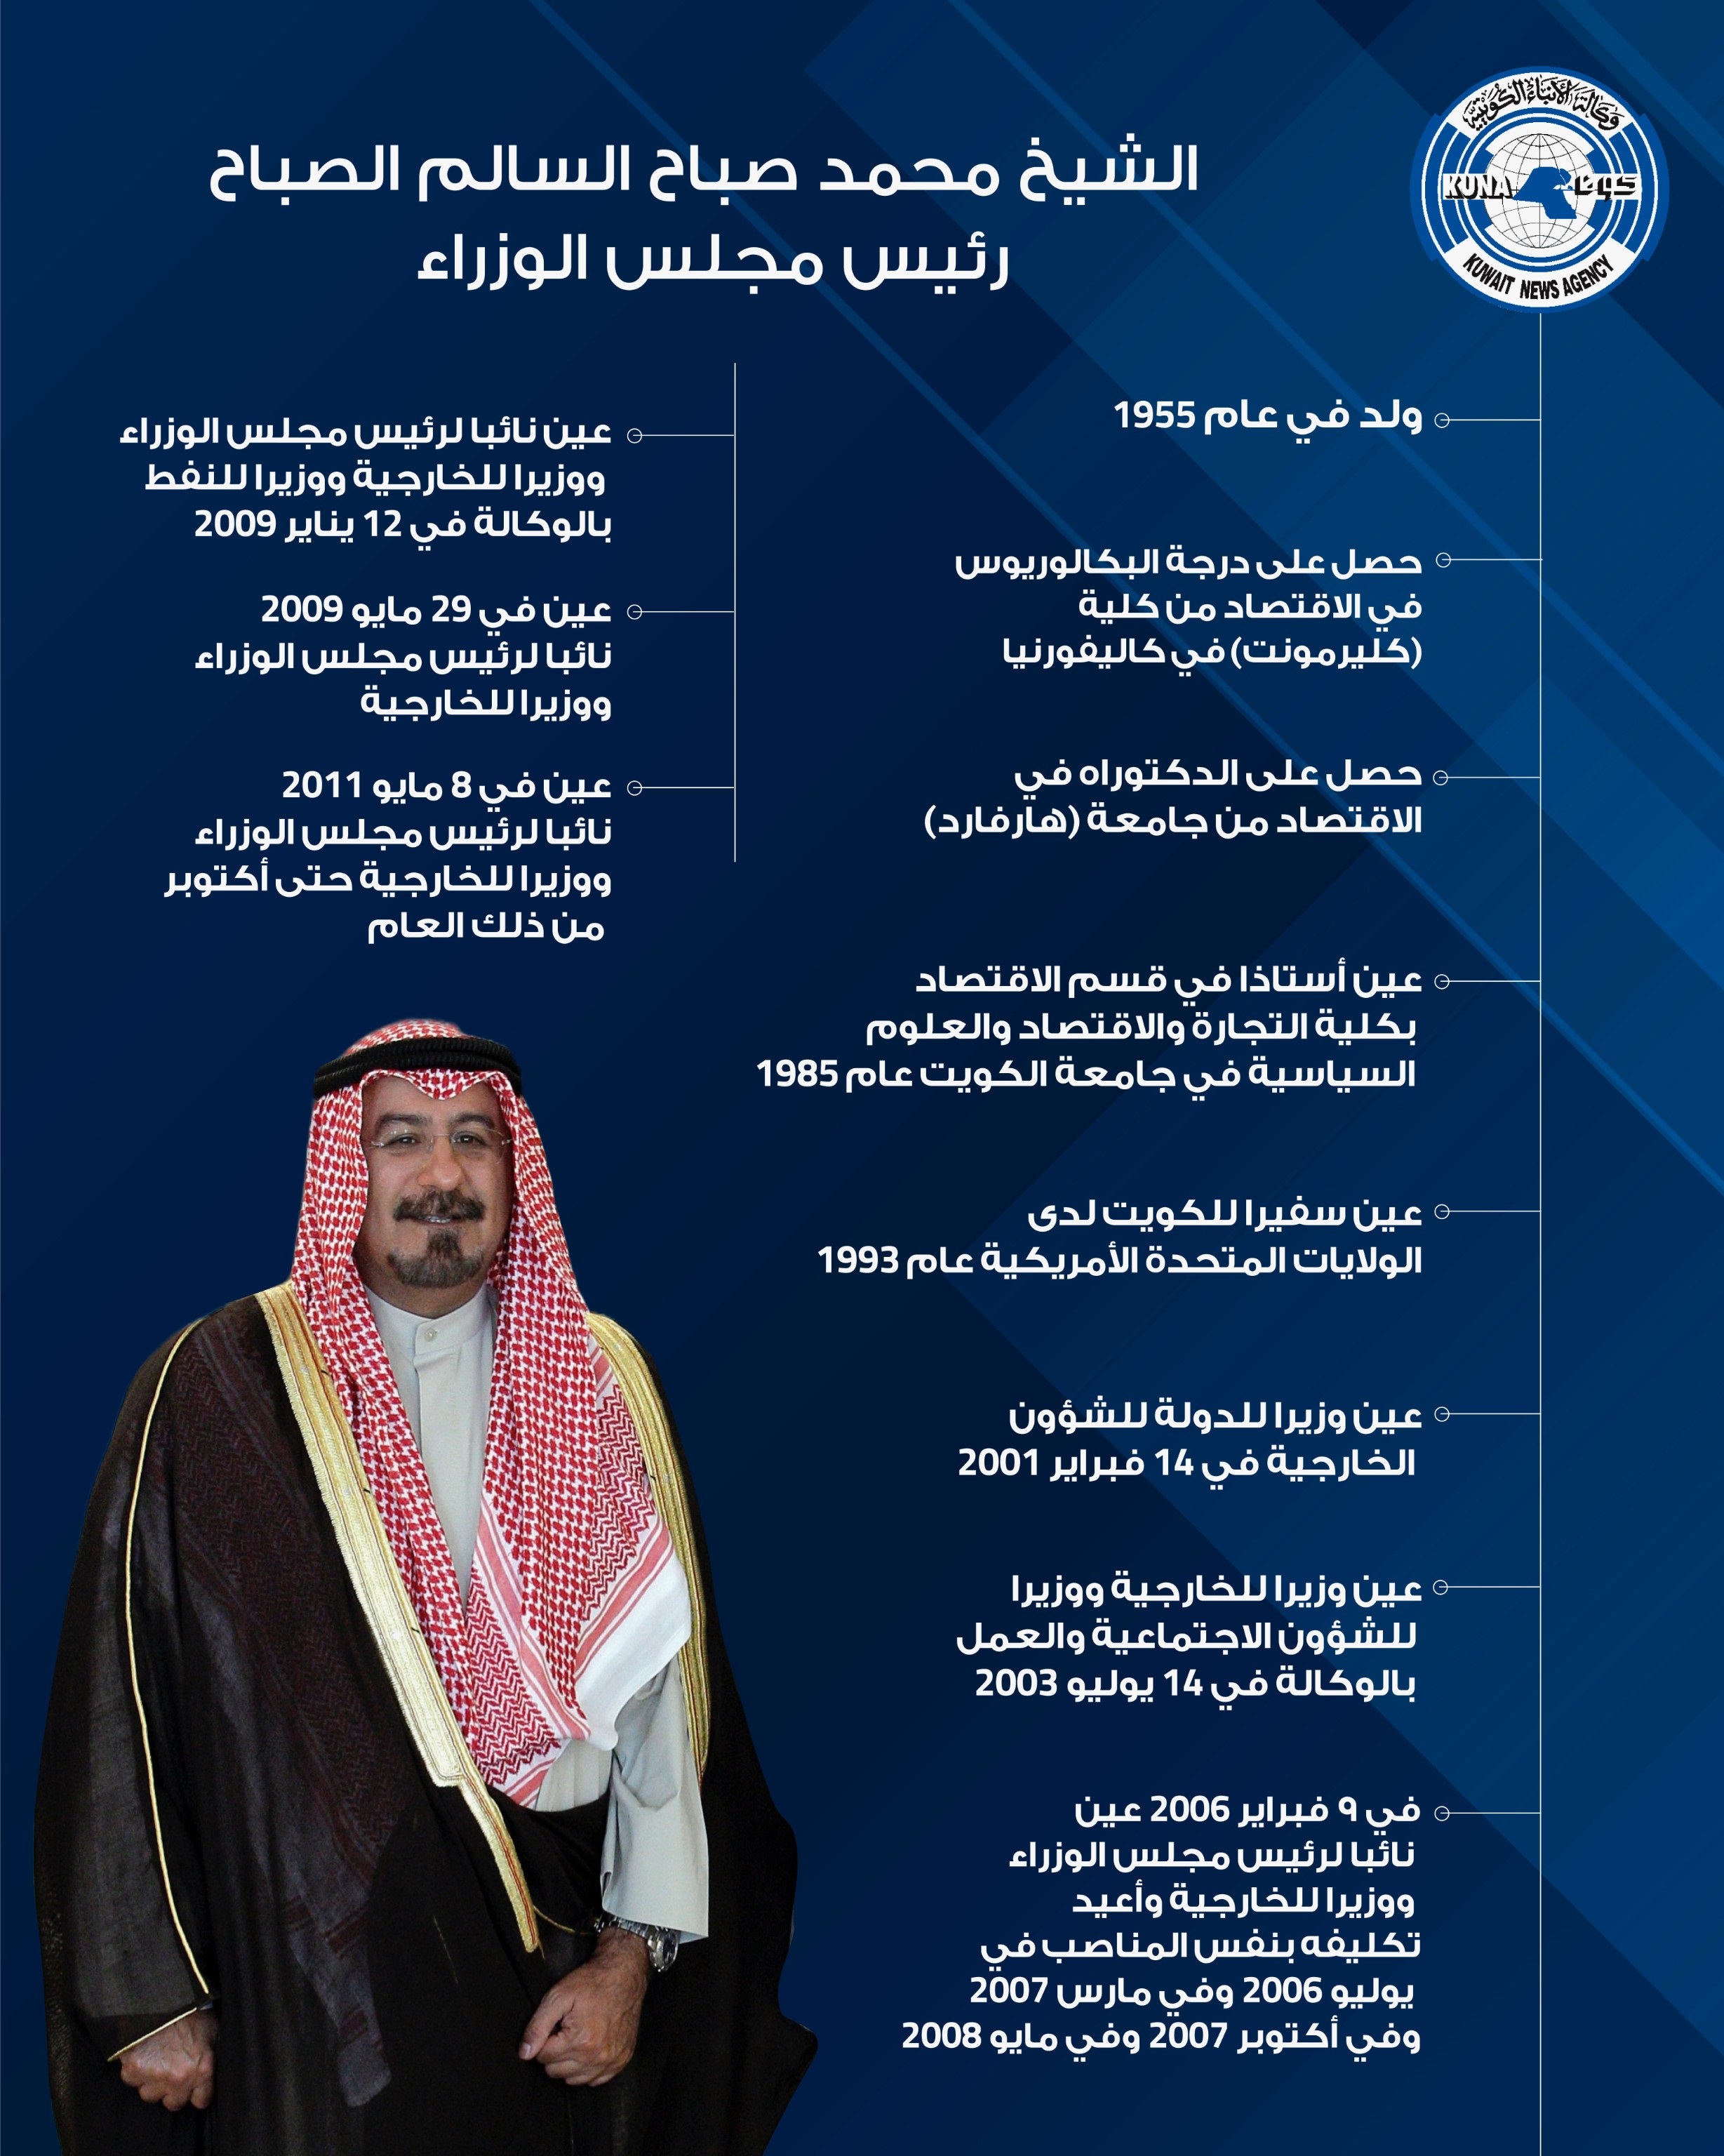 السيرة الذاتية لرئيس مجلس الوزراء الشيخ الدكتور محمد صباح السالم الصباح                                                                                                                                                                                   